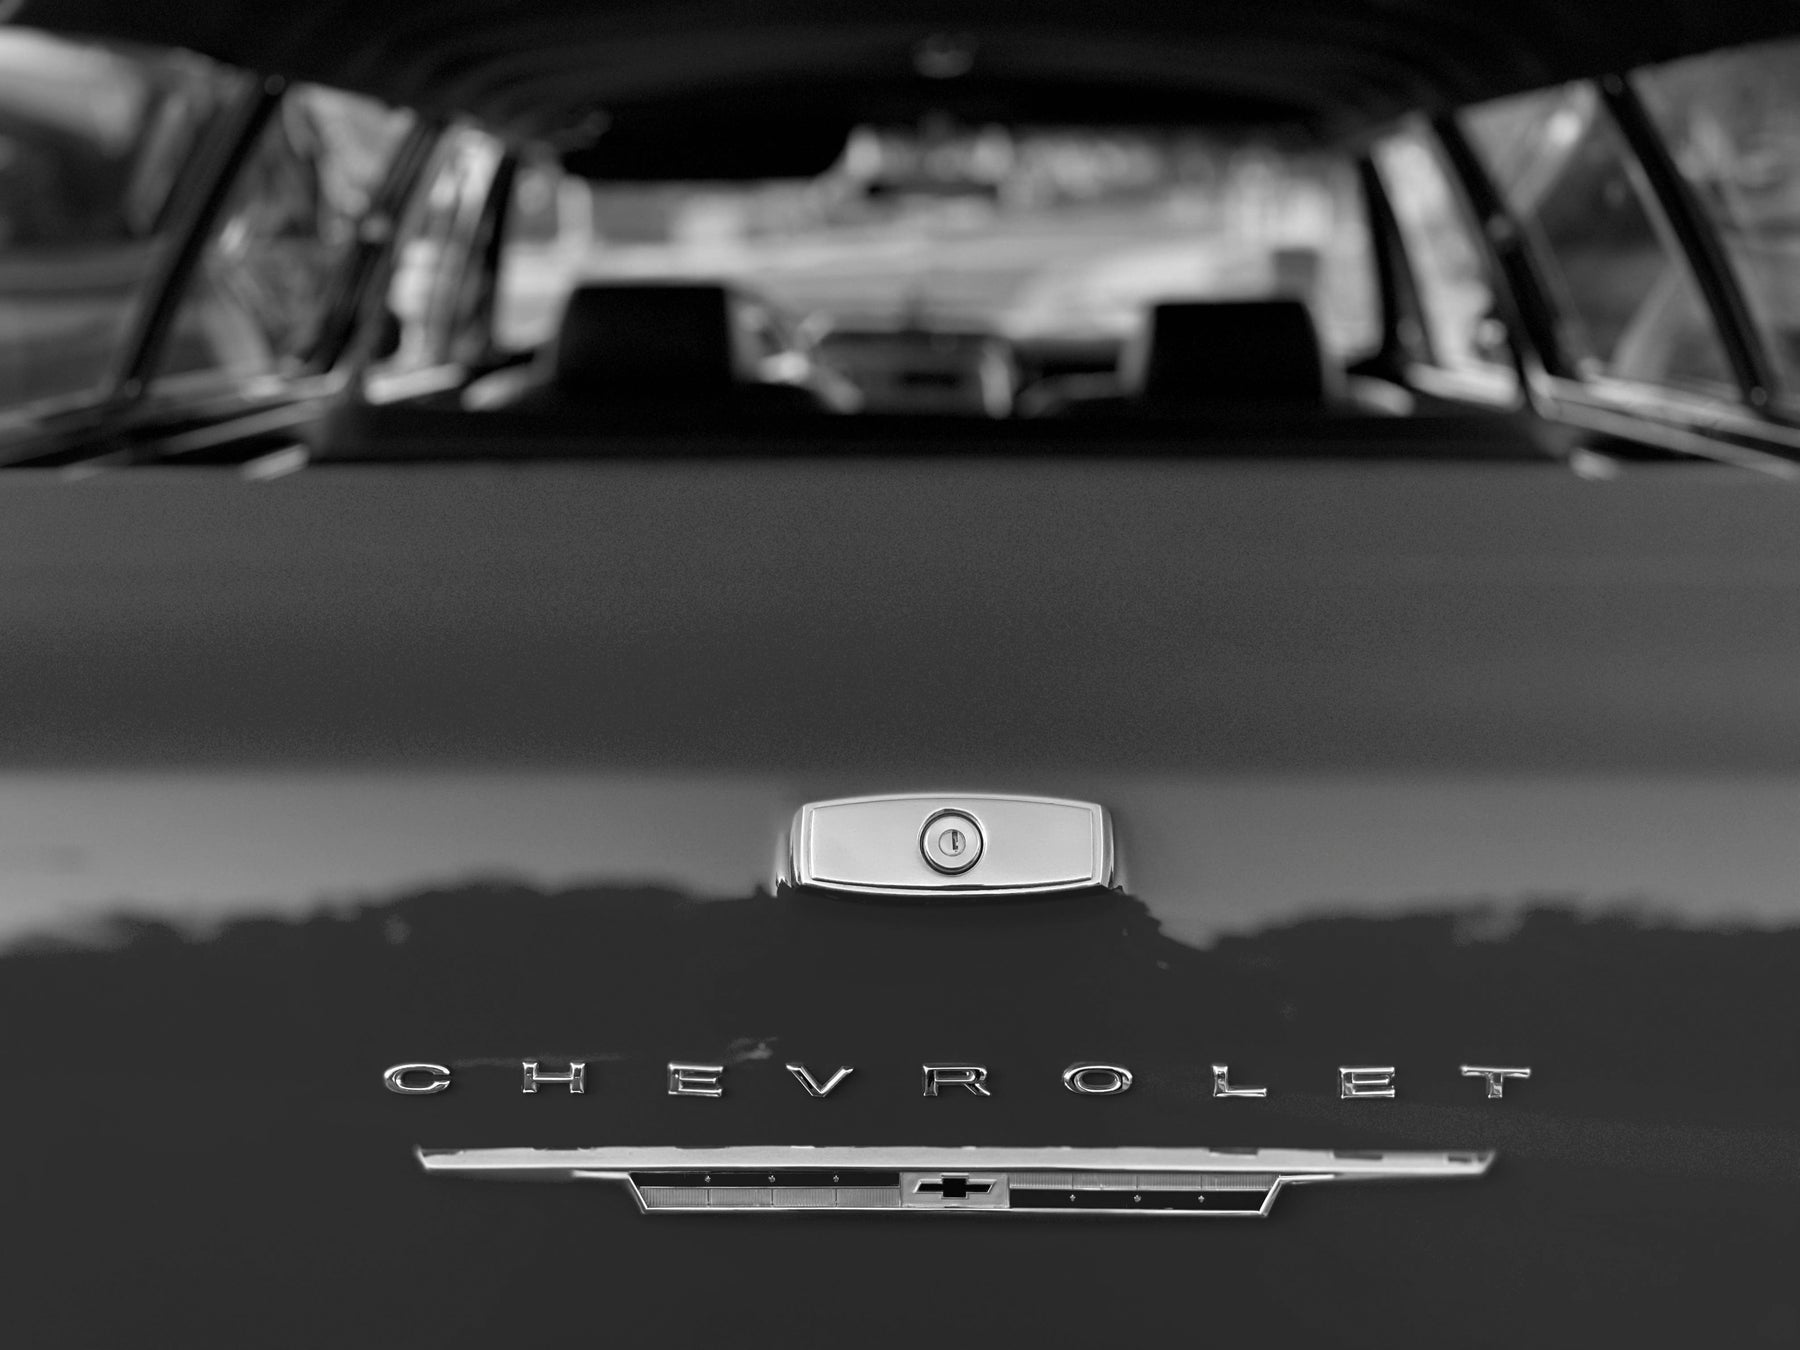 1964 Chevrolet Chevelle Wagon FINE ART PRINT